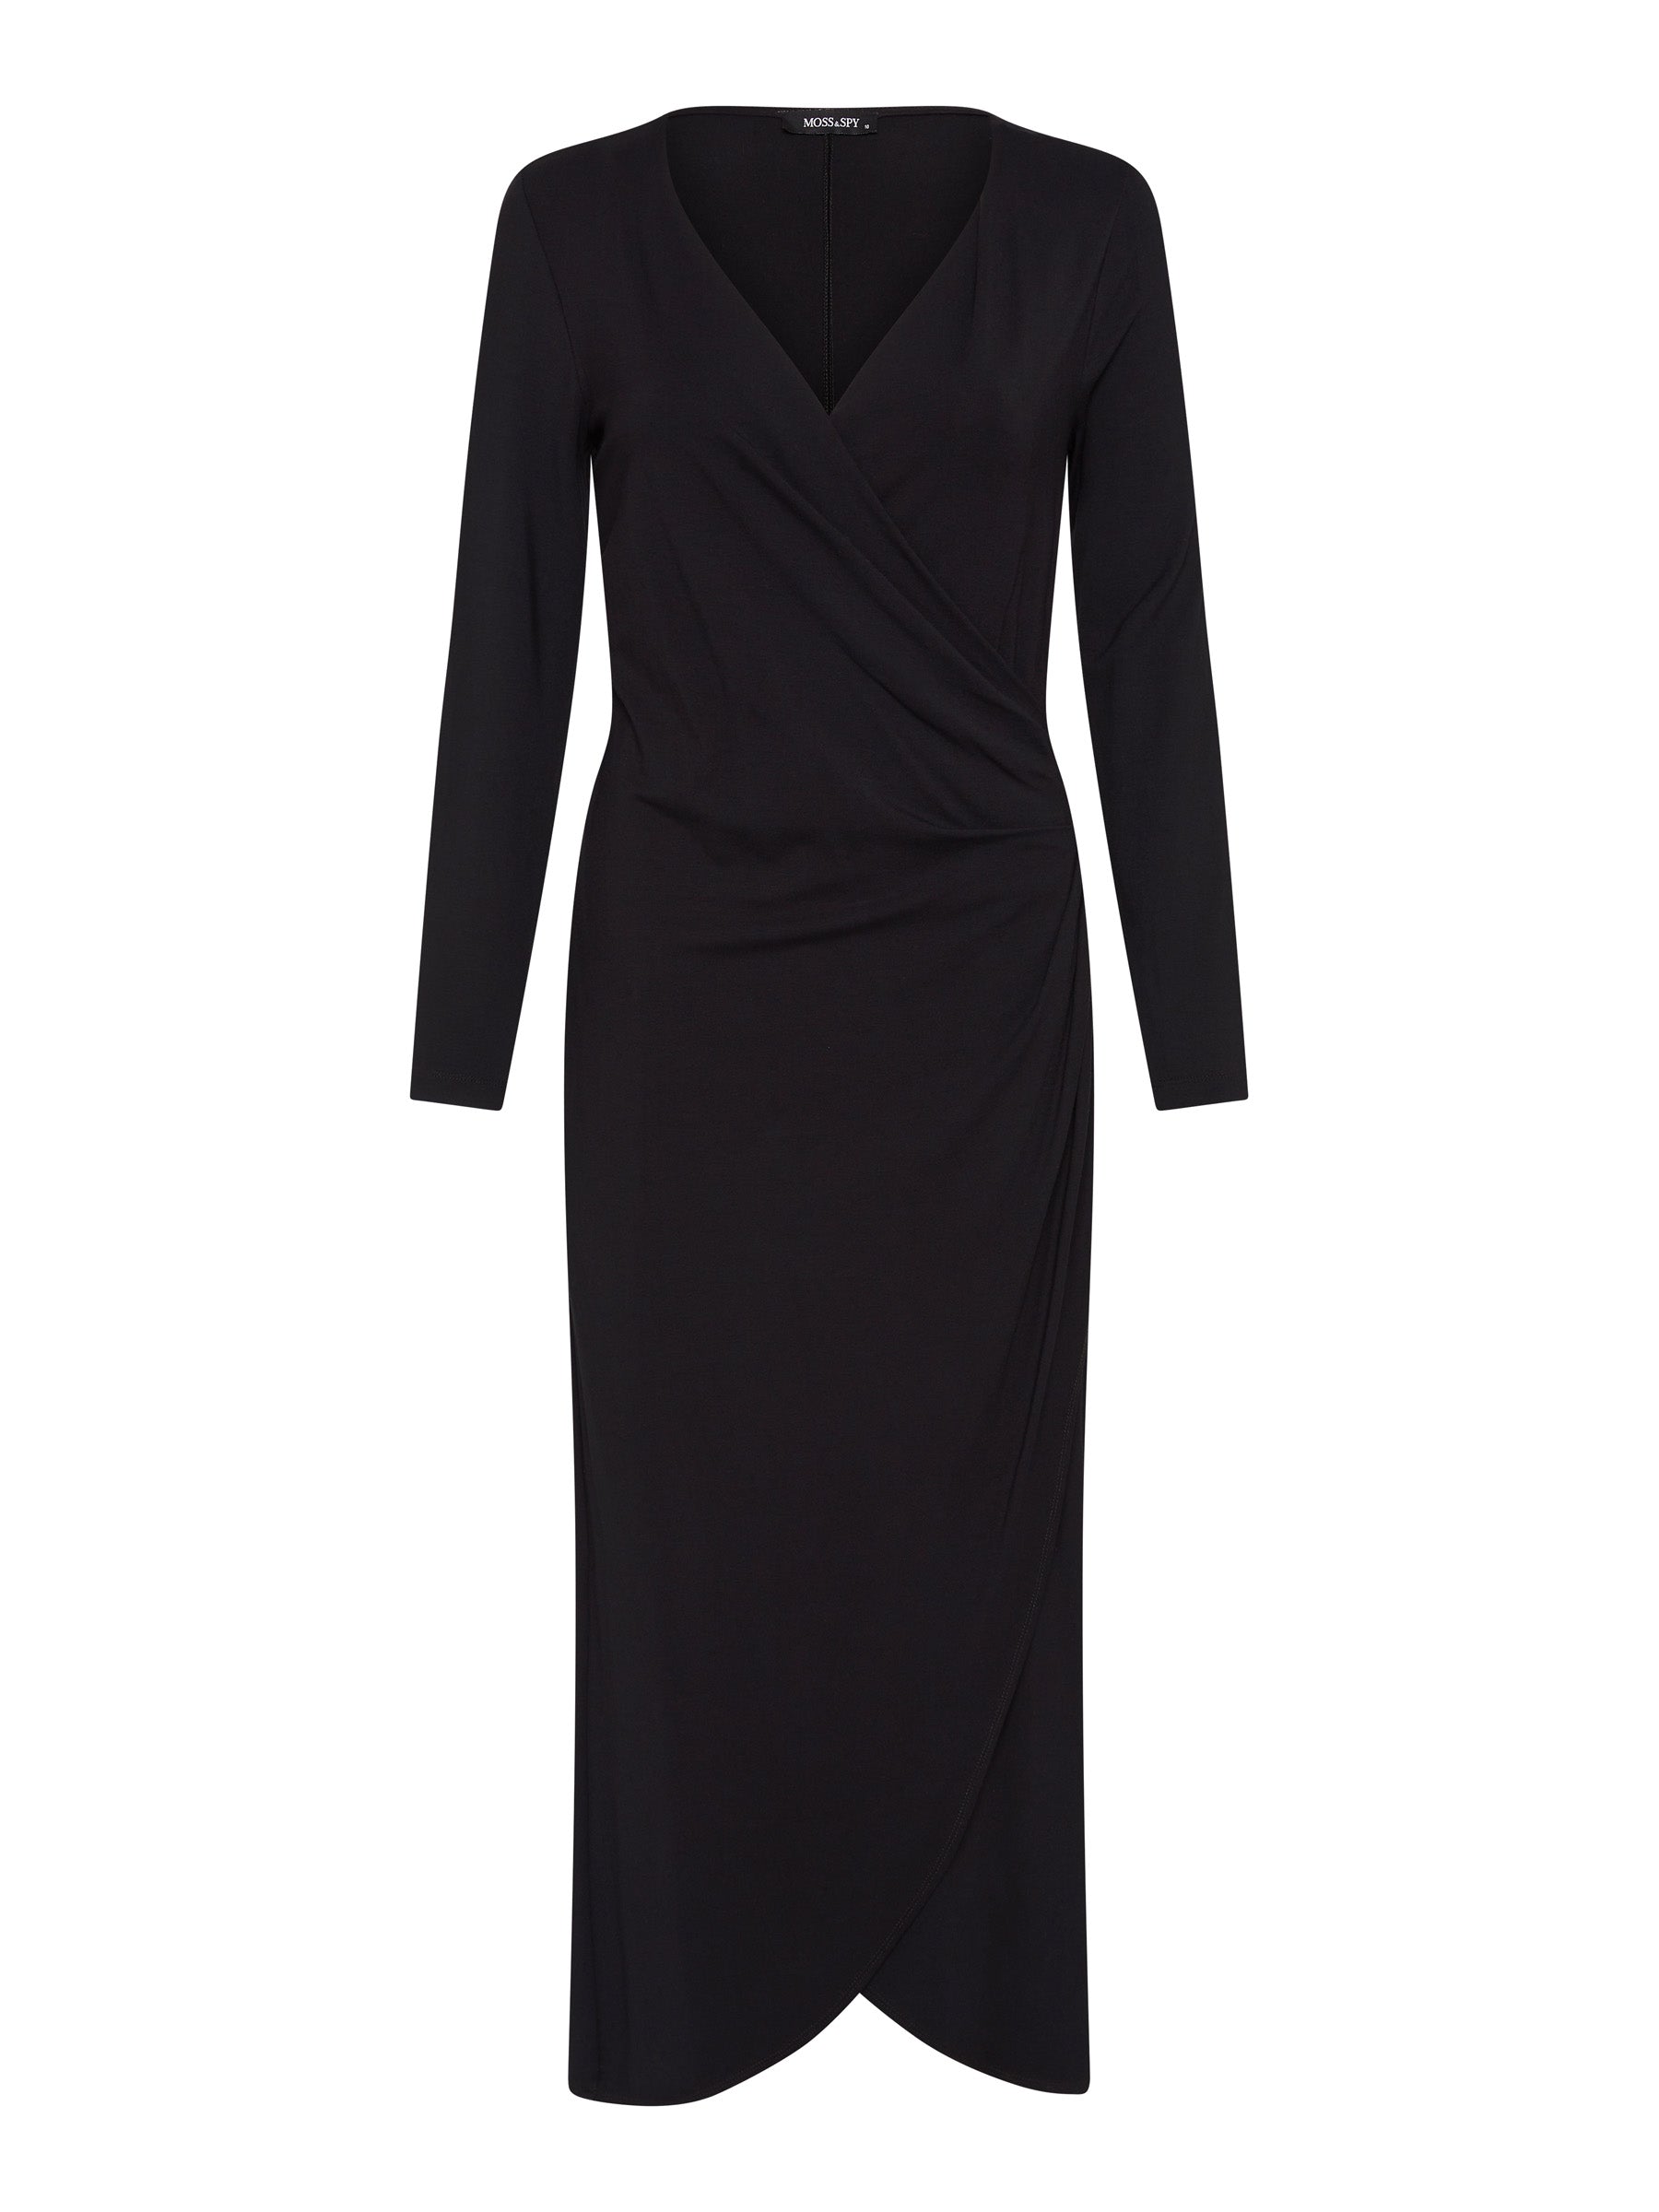 Adelphi Dress - Black (Size 10 Only)